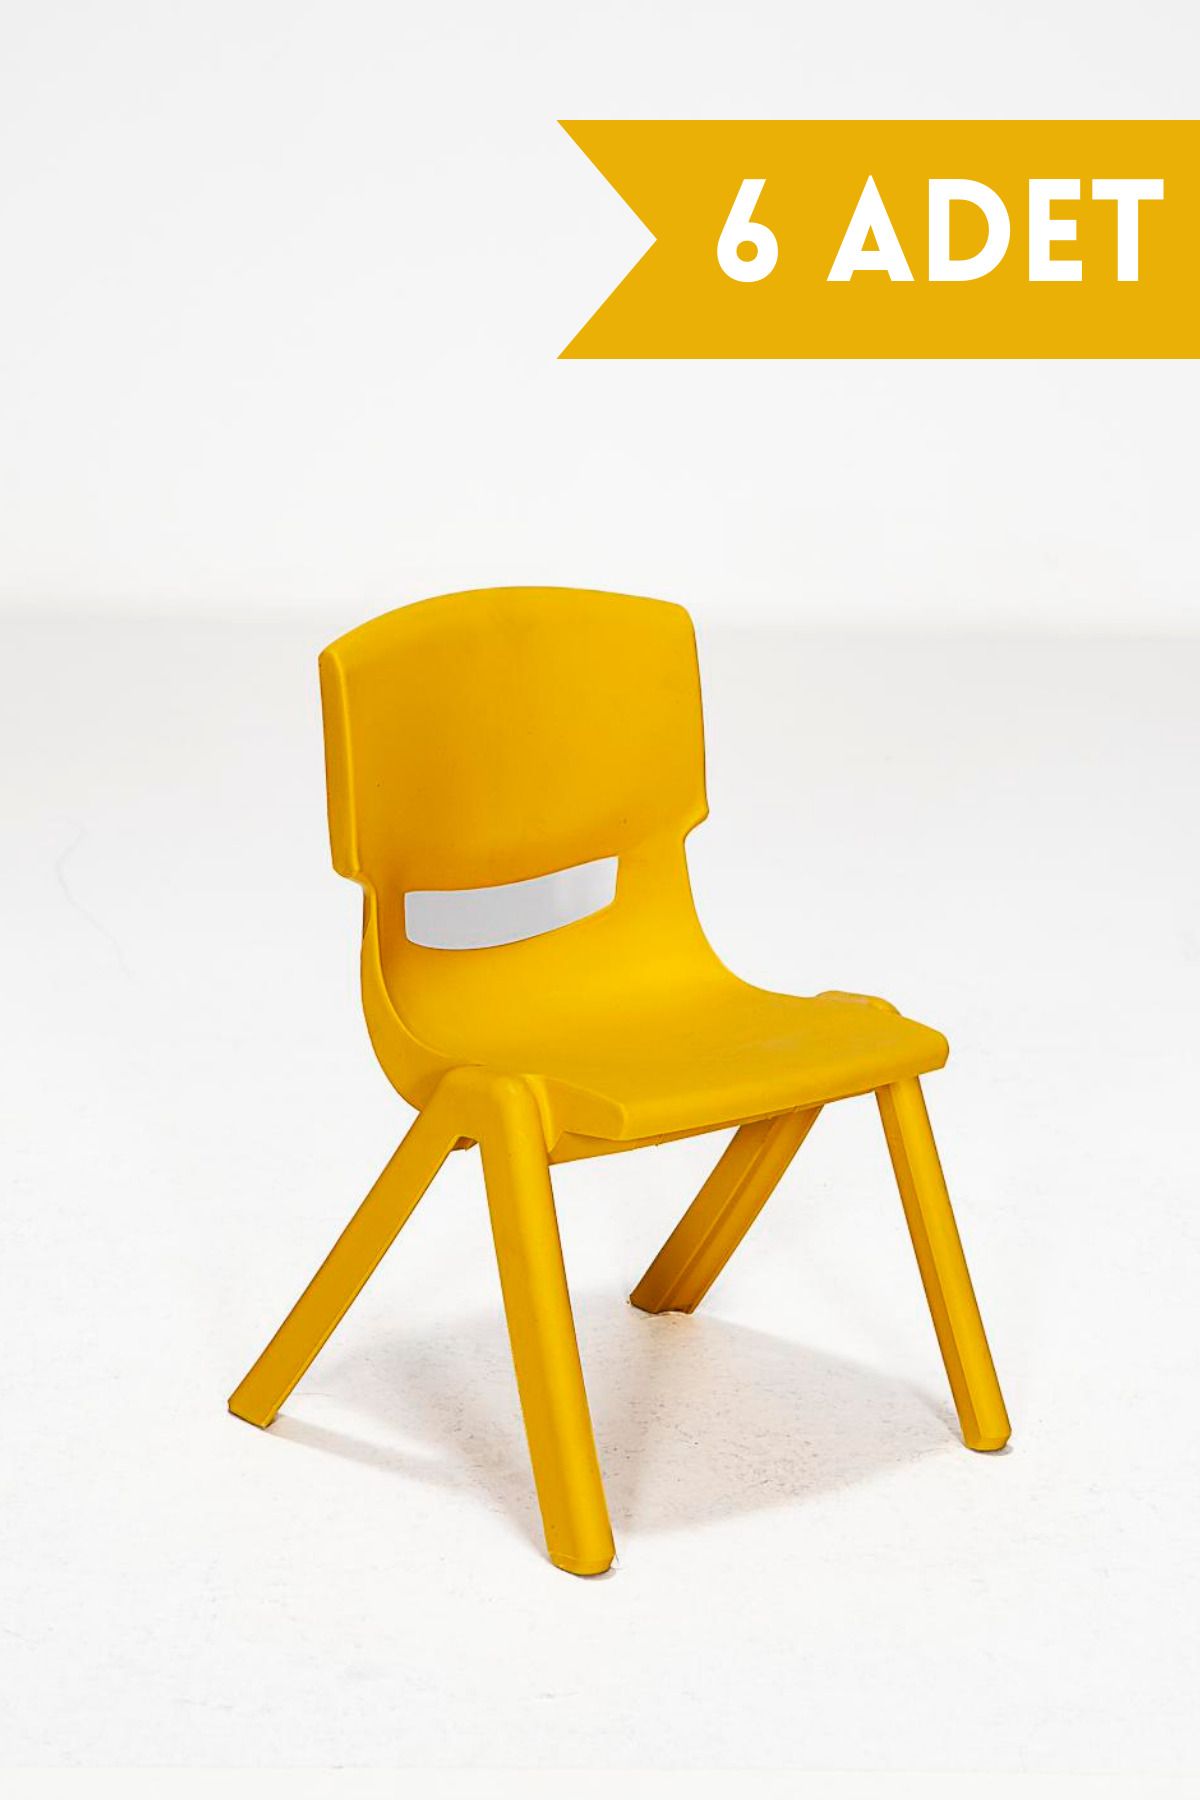 MOBETTO 6 Adet Kreş Anaokulu Çocuk Sandalyesi Sert Plastik- Sarı